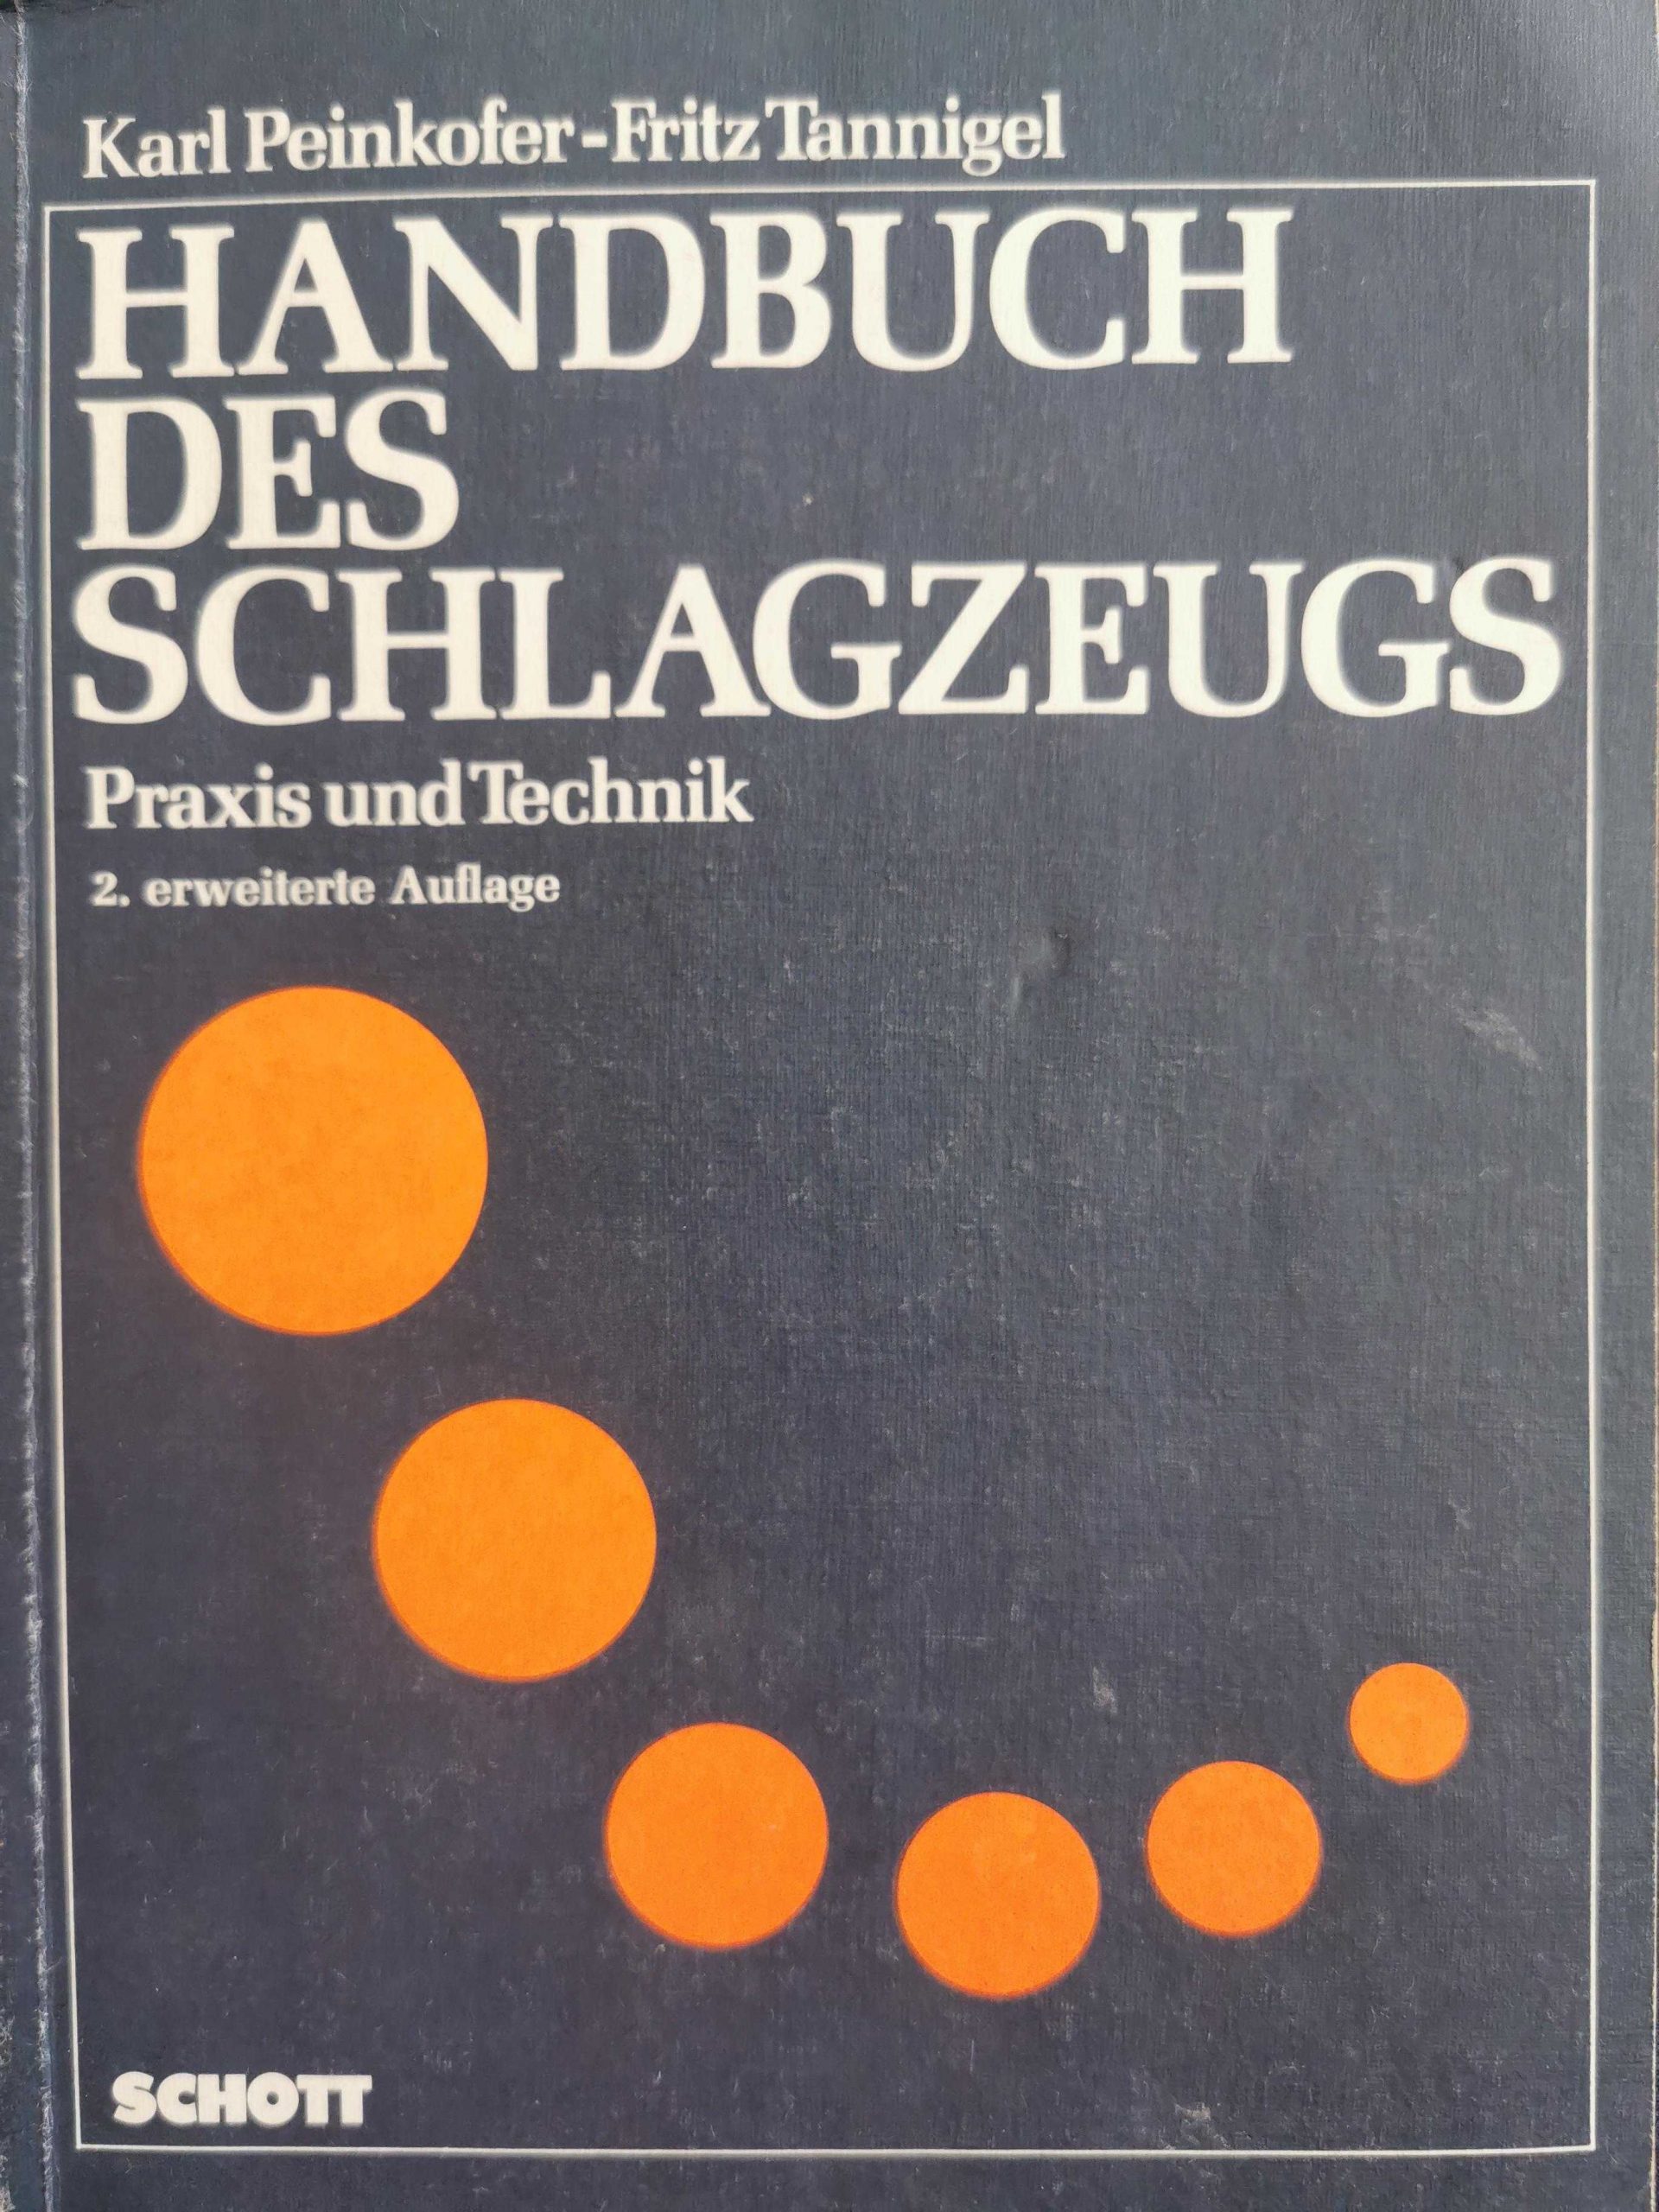 Handbuch Des Schlagzeugs (German edition) by Karl Peinkofer